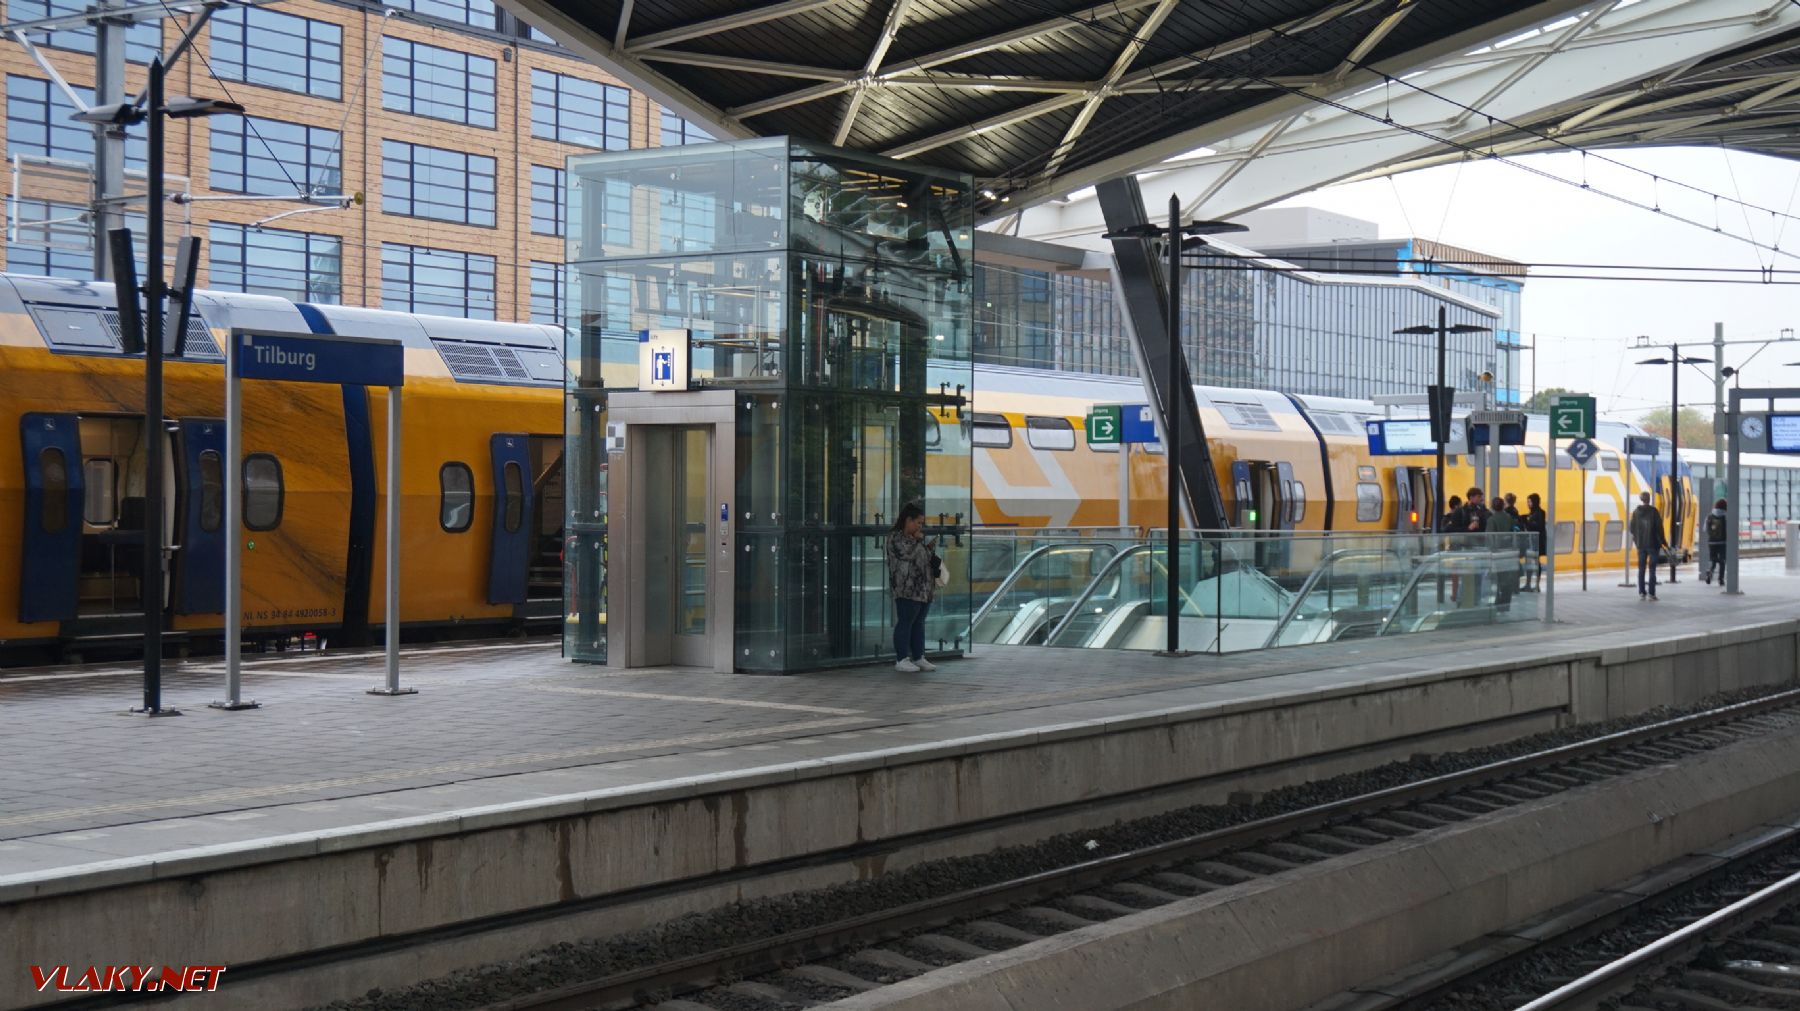 V stanici Tilburg